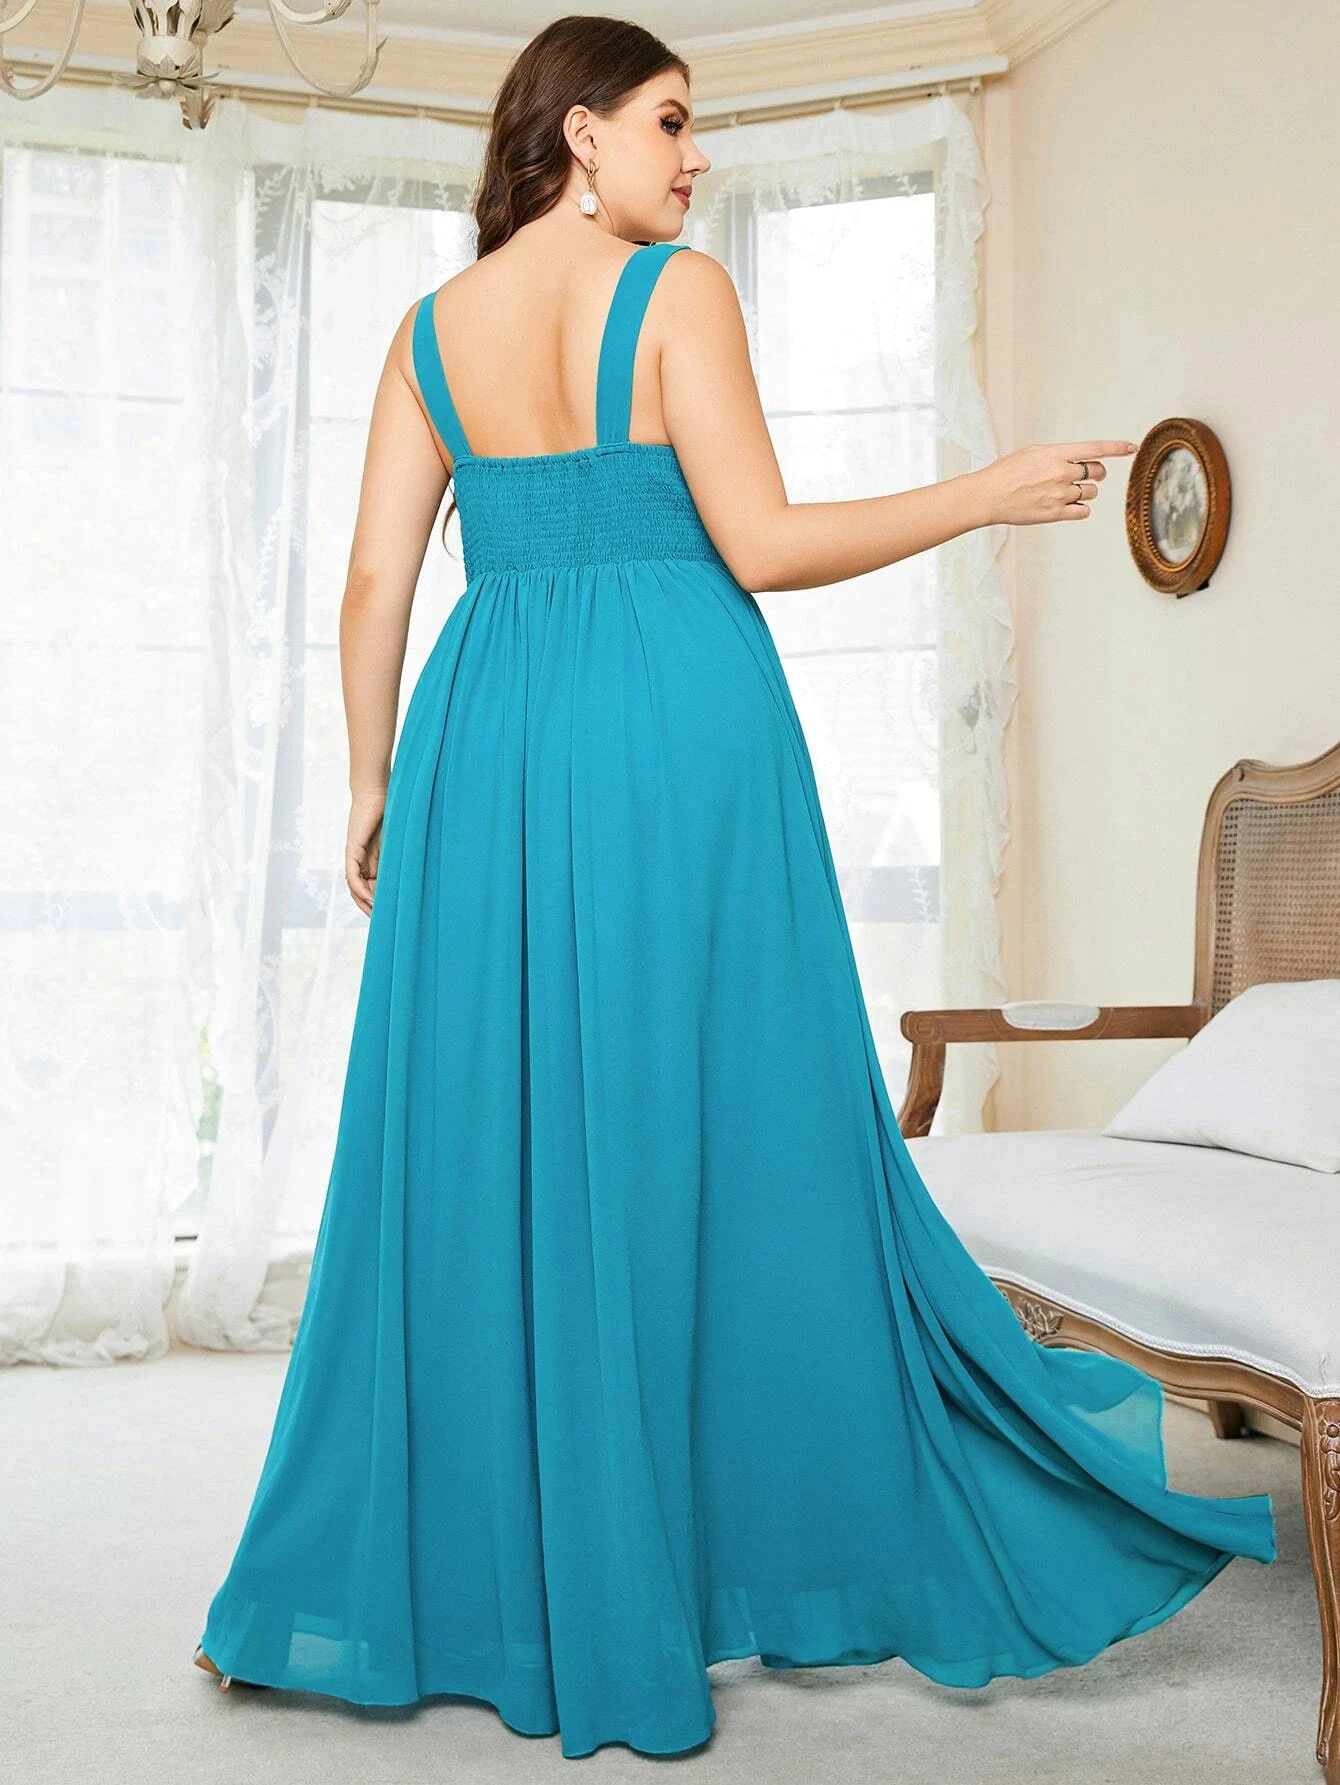 Kadın Artı Boyutu gelinlik modelleri Düğün Zarif Dantel Rhinestones Aplike Parti Elbiseler Büyük Boy Bayan şifon gece elbisesi - 3